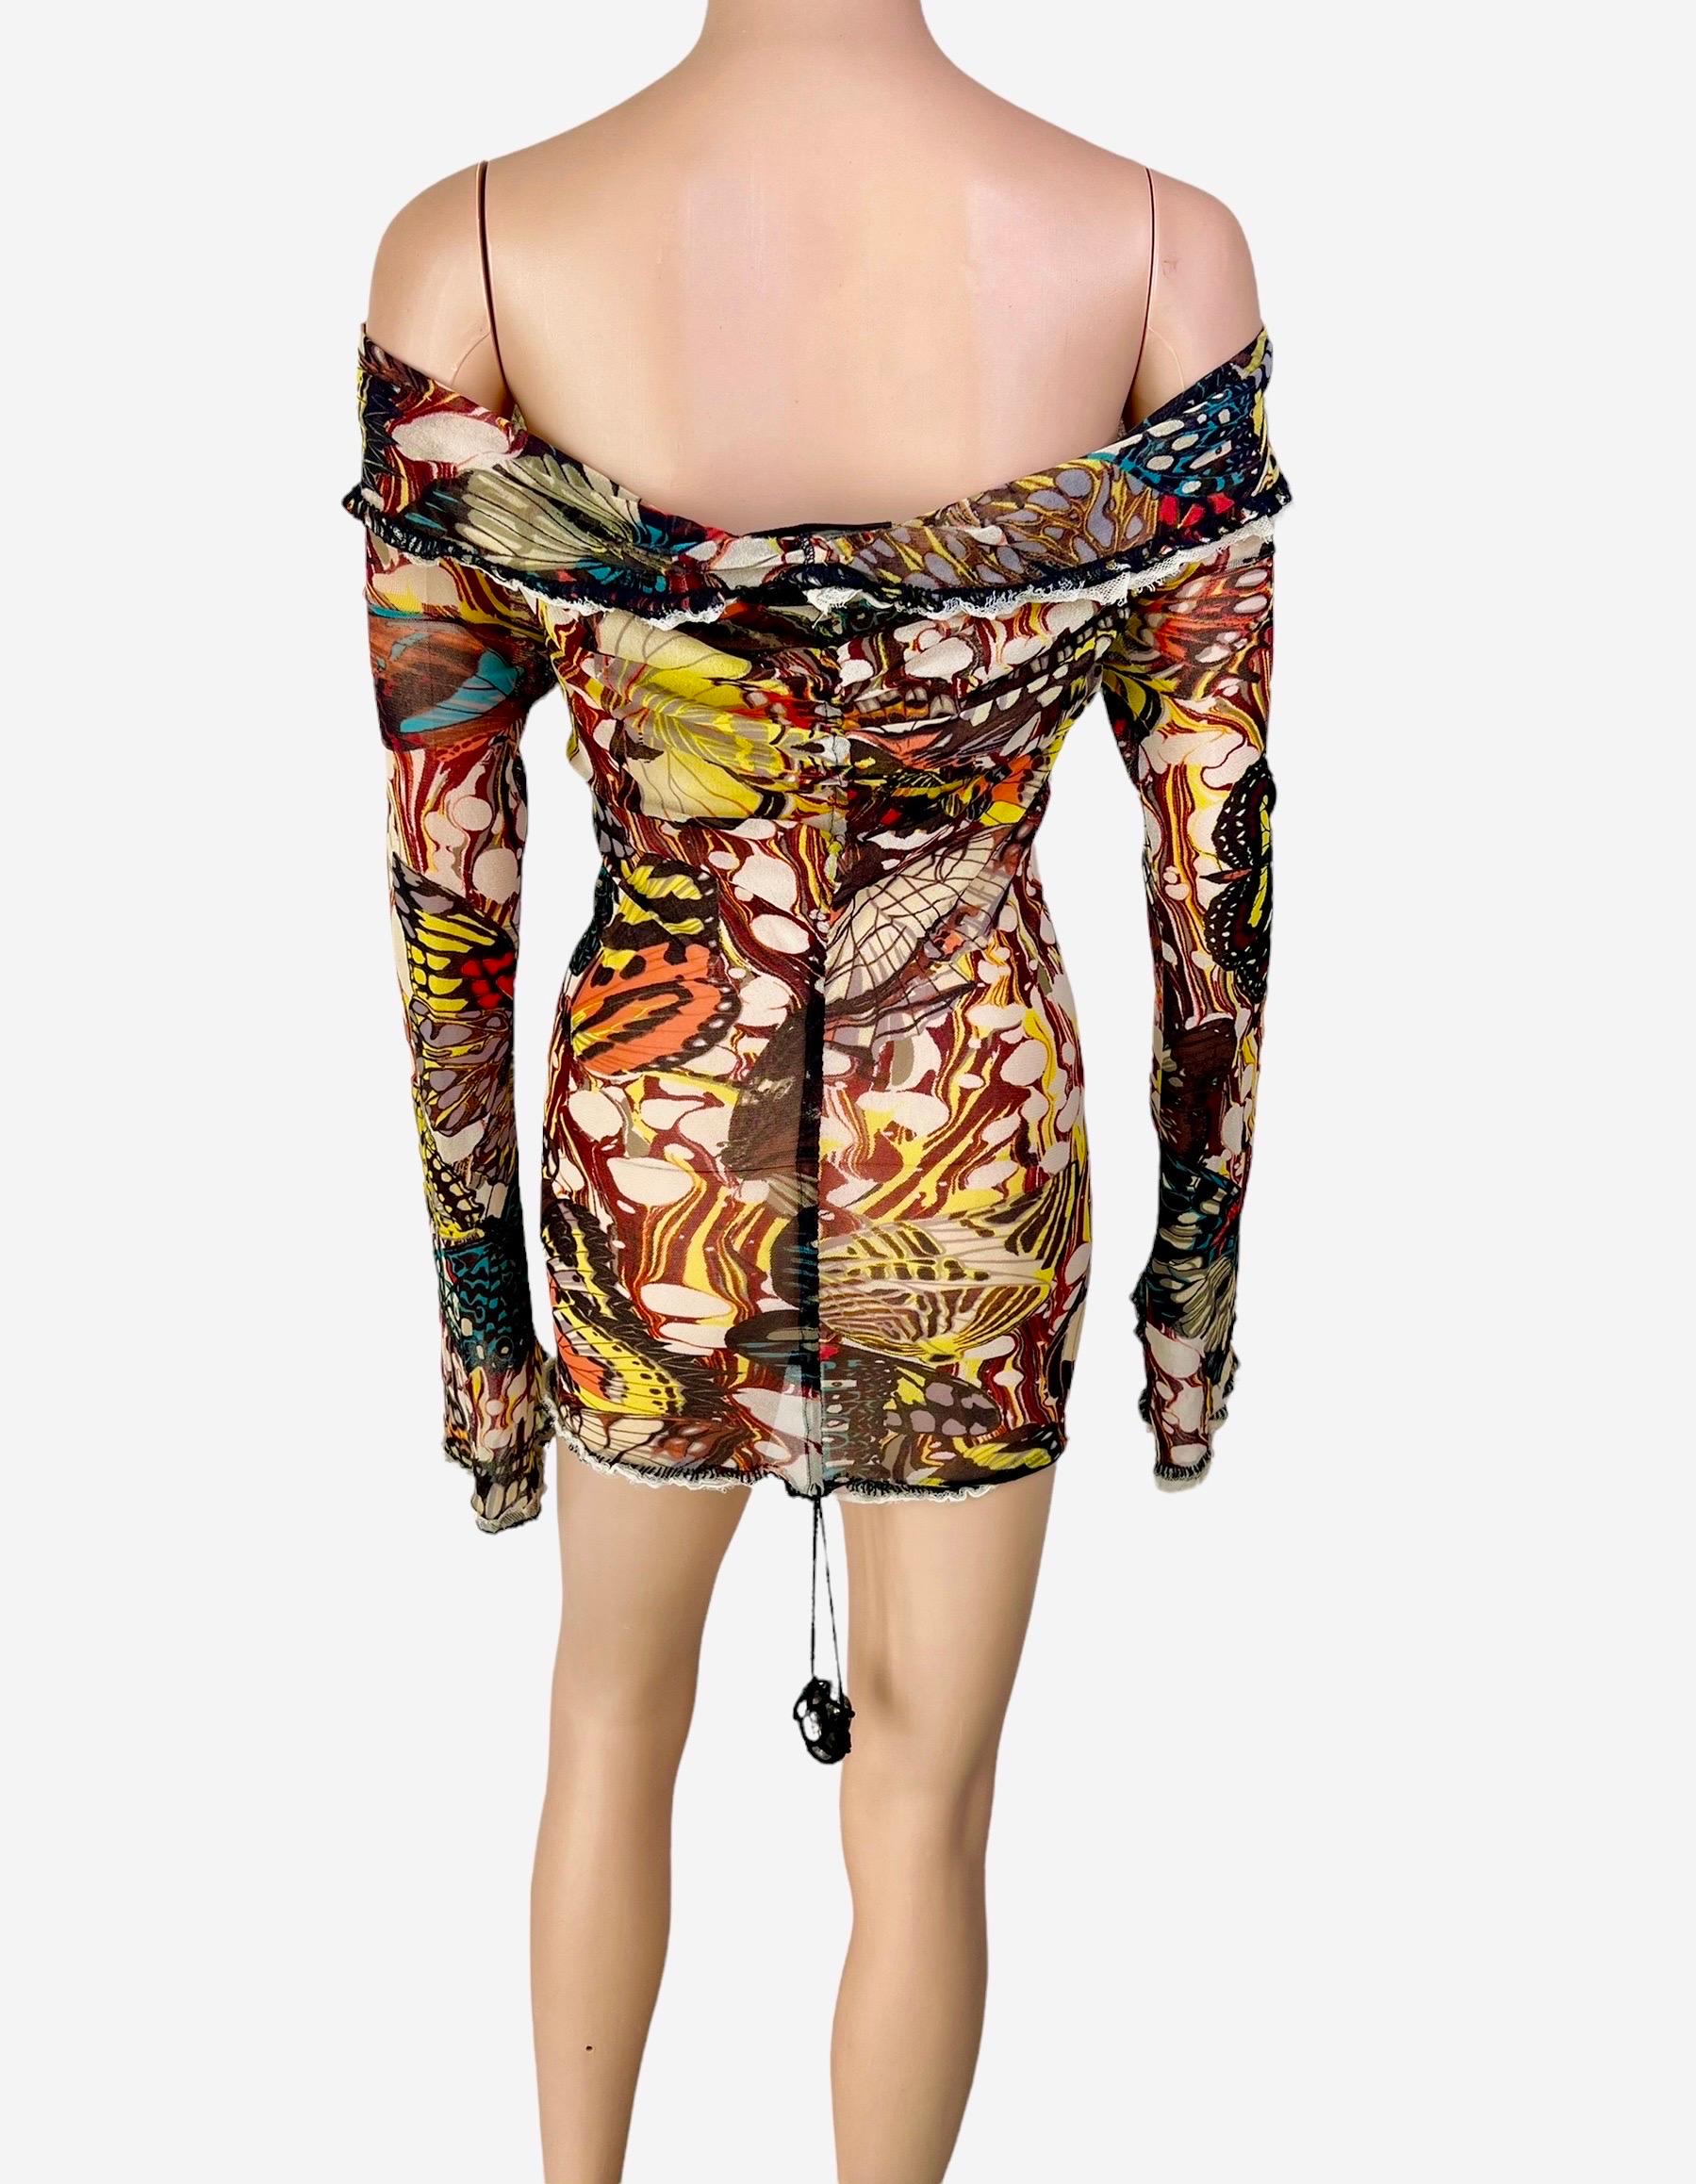 Women's or Men's Jean Paul Gaultier S/S 2003 Butterfly Sheer Mesh Off Shoulder Bodycon Mini Dress